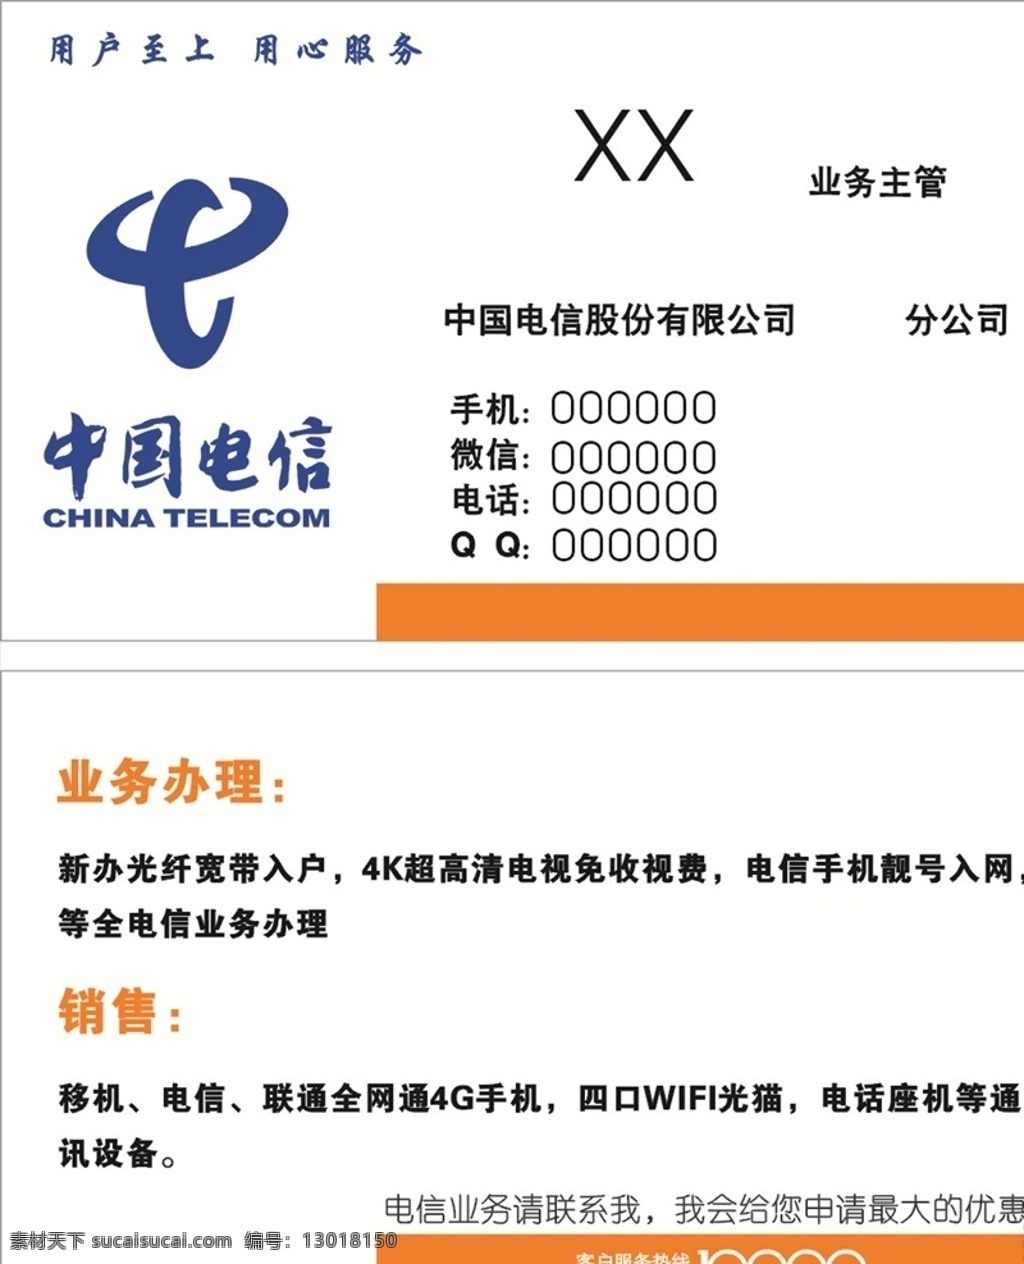 中国电信图片 中国电信 电信 手机 logo 智能手机 宽带 10000 名片 卡片